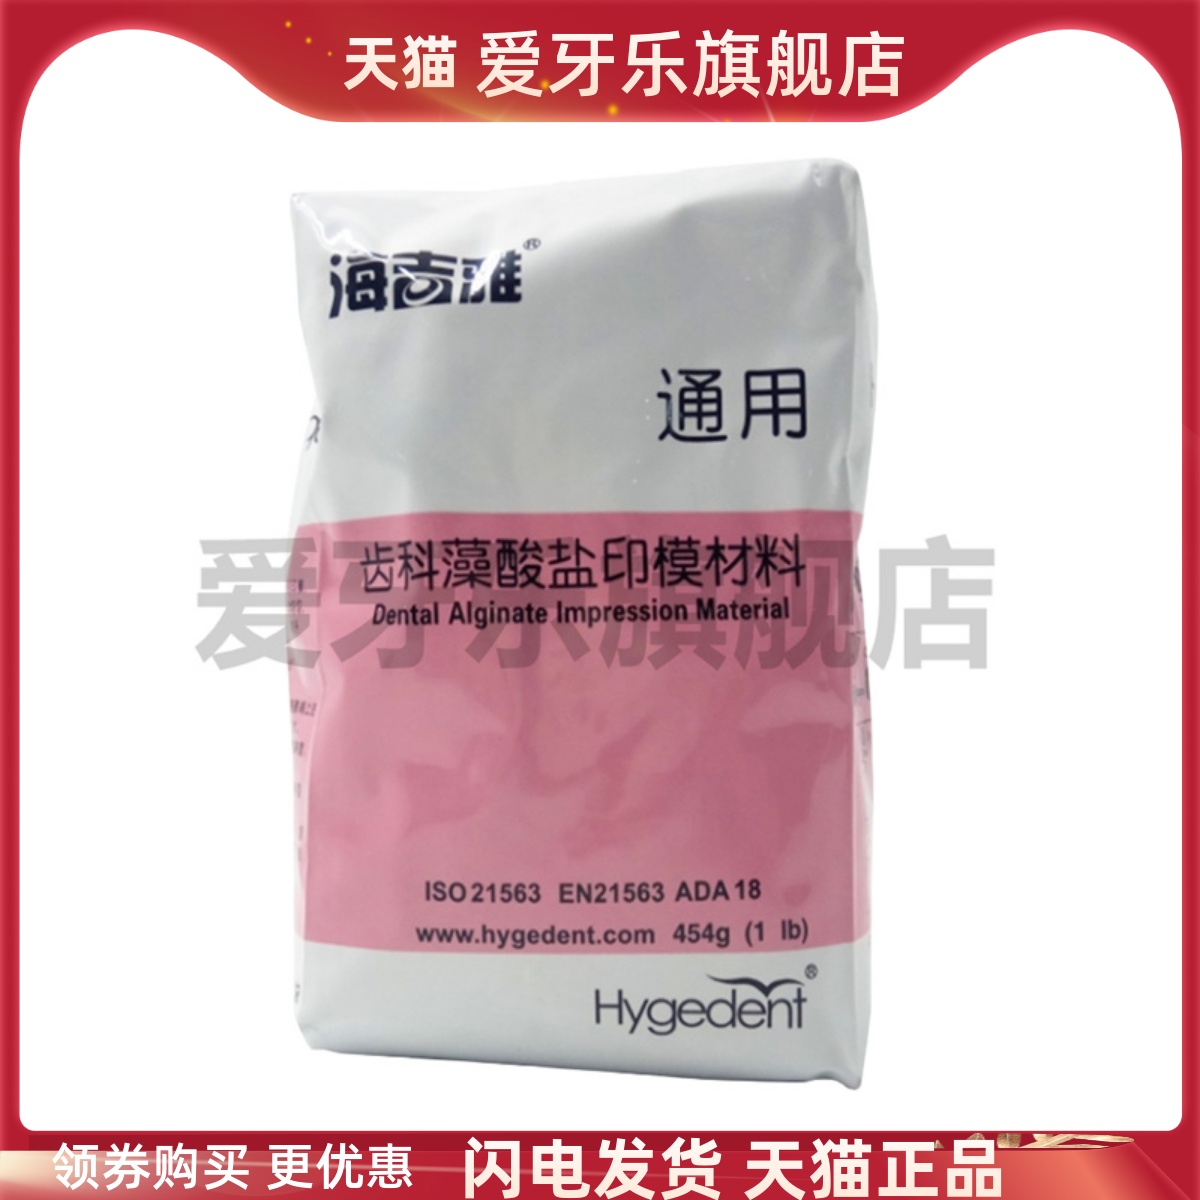 北京海吉雅齿科藻酸盐印模材用烤瓷黄水晶紫水晶三色变色龙爱牙乐